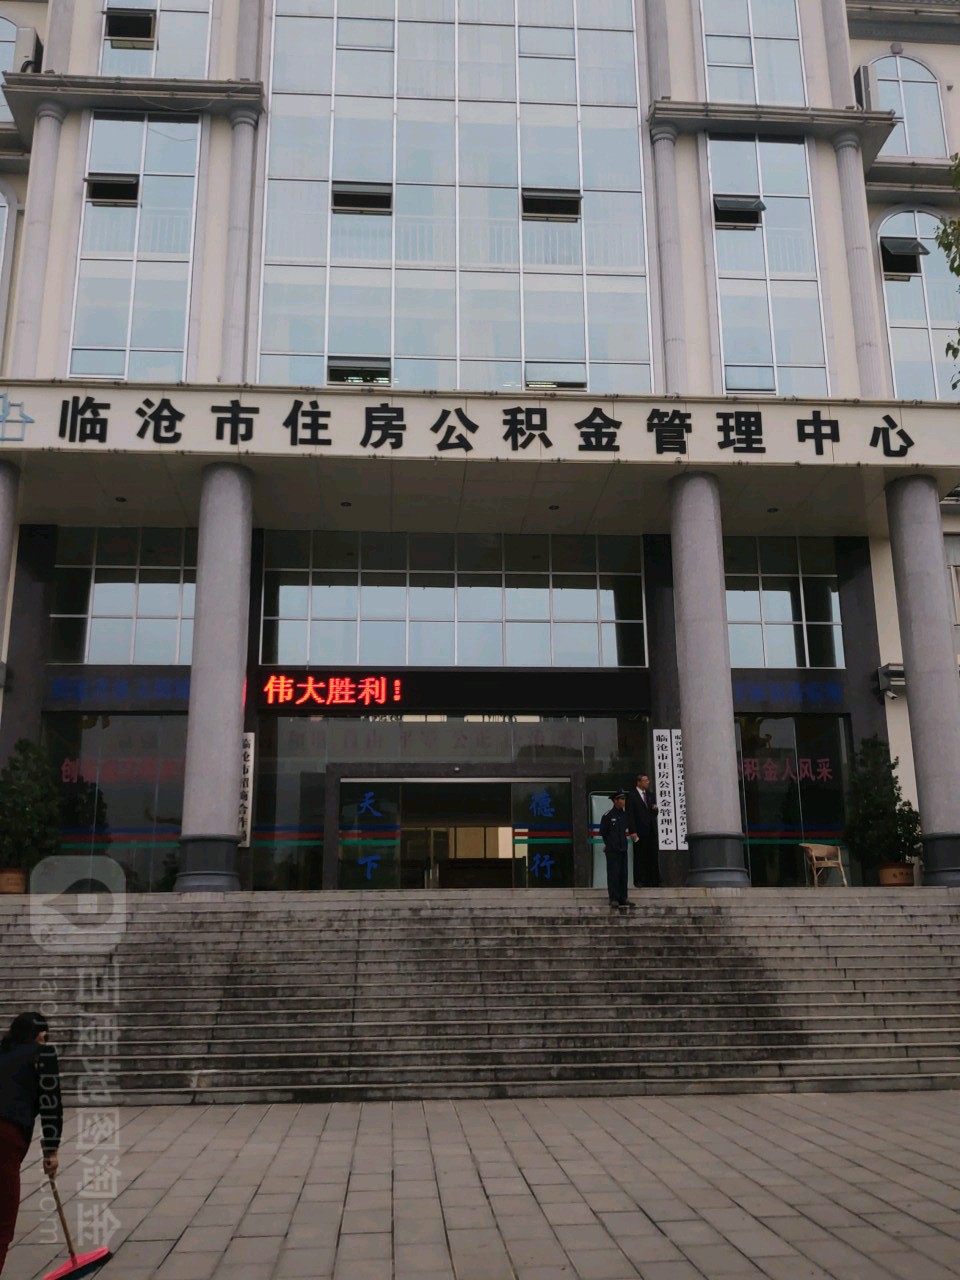 臨滄市住房公積金管理中心